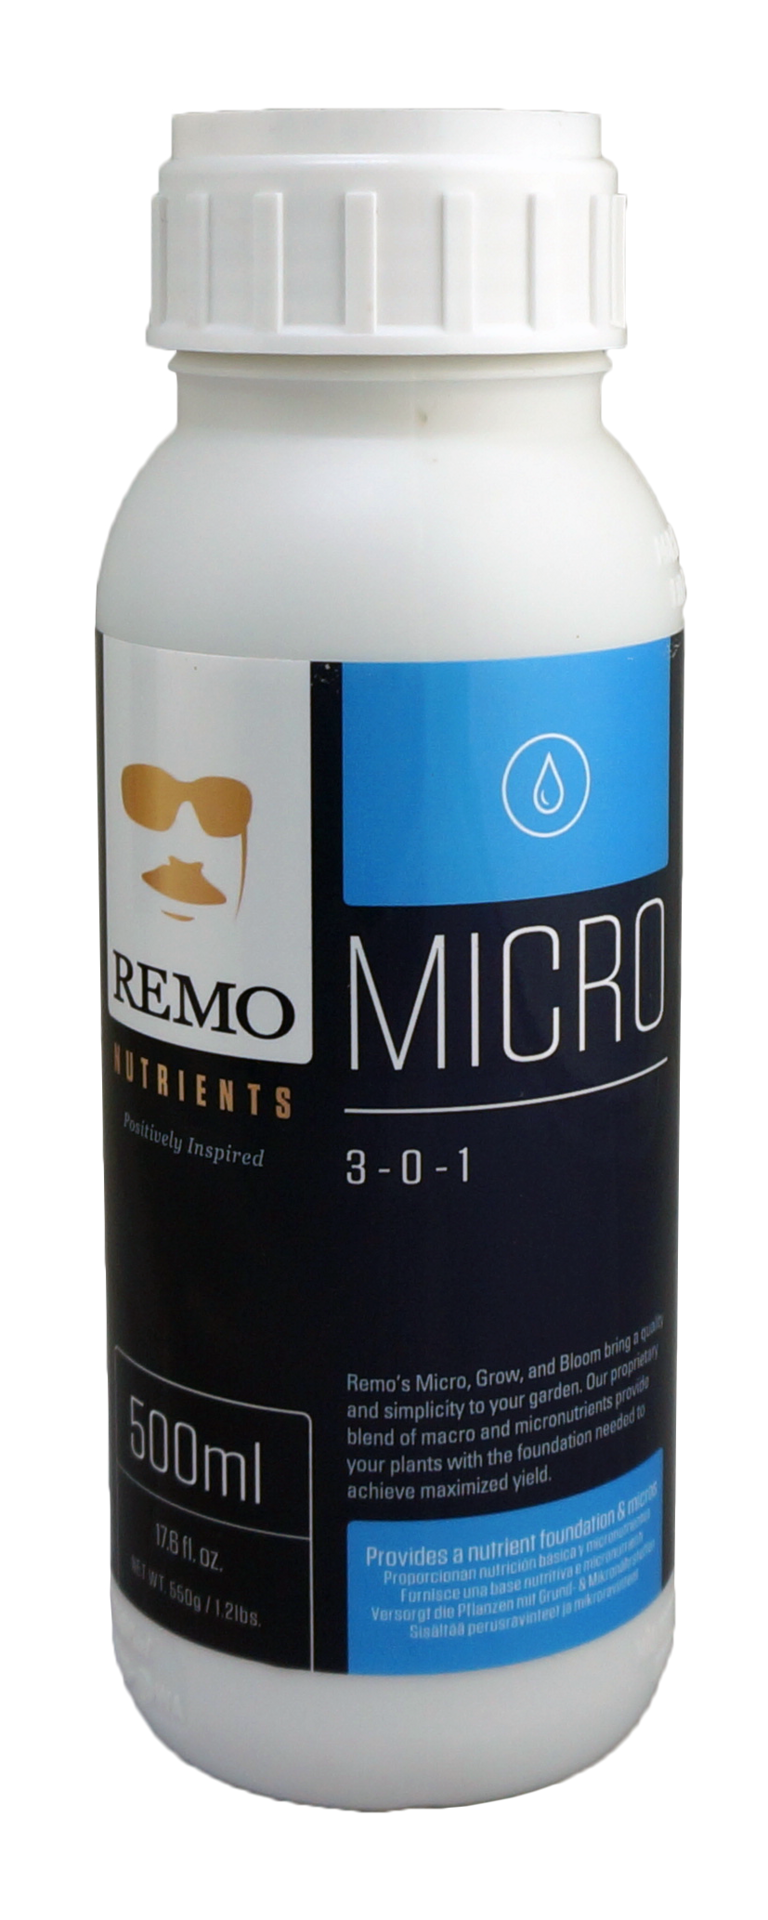 REMO MICRO 500 ml